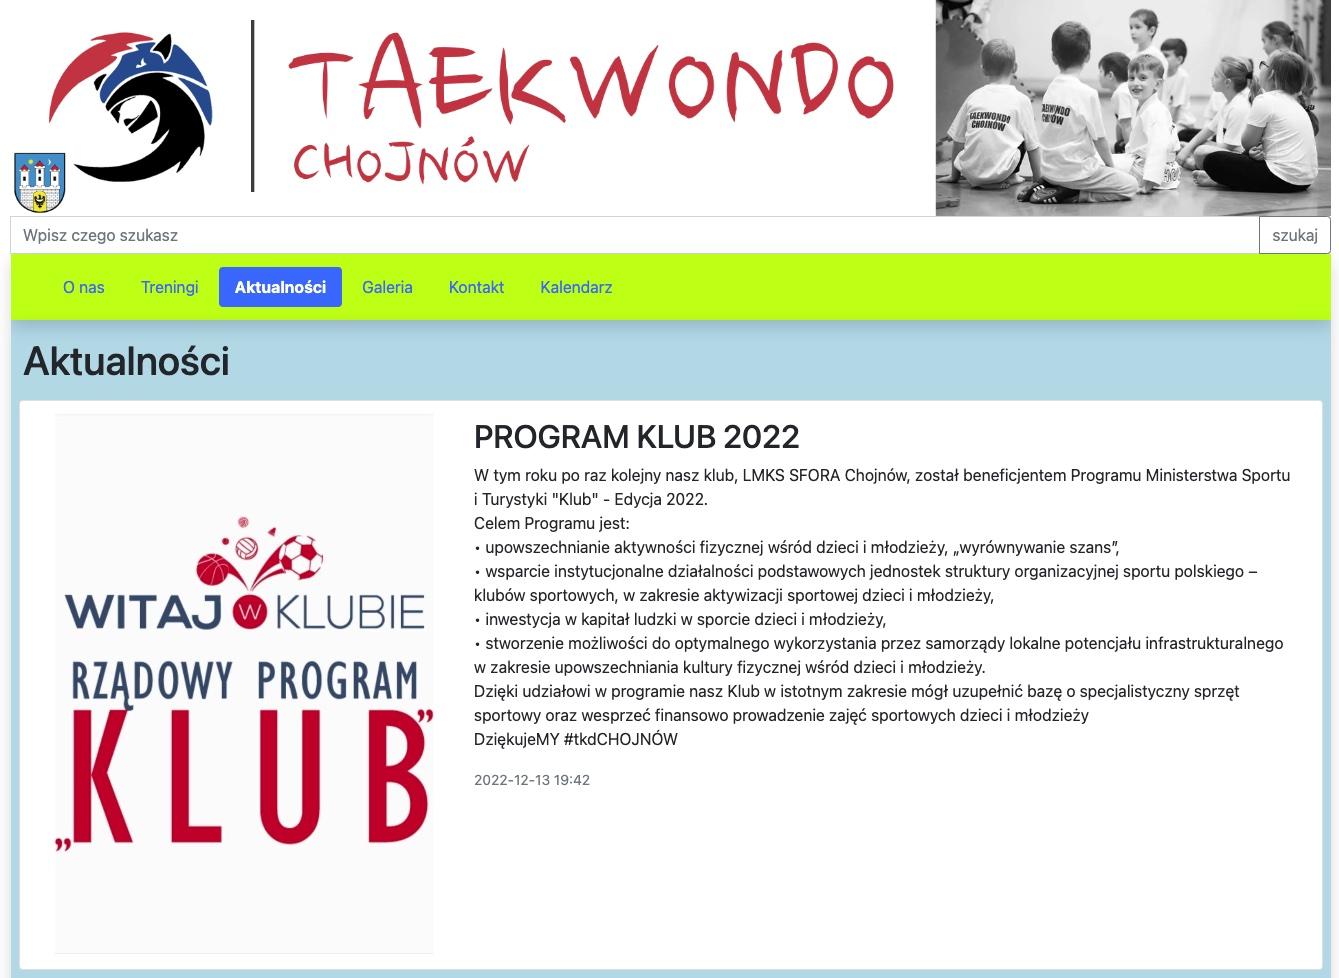 zrzut ekranu witryny https://taekwondo.chojnow.eu